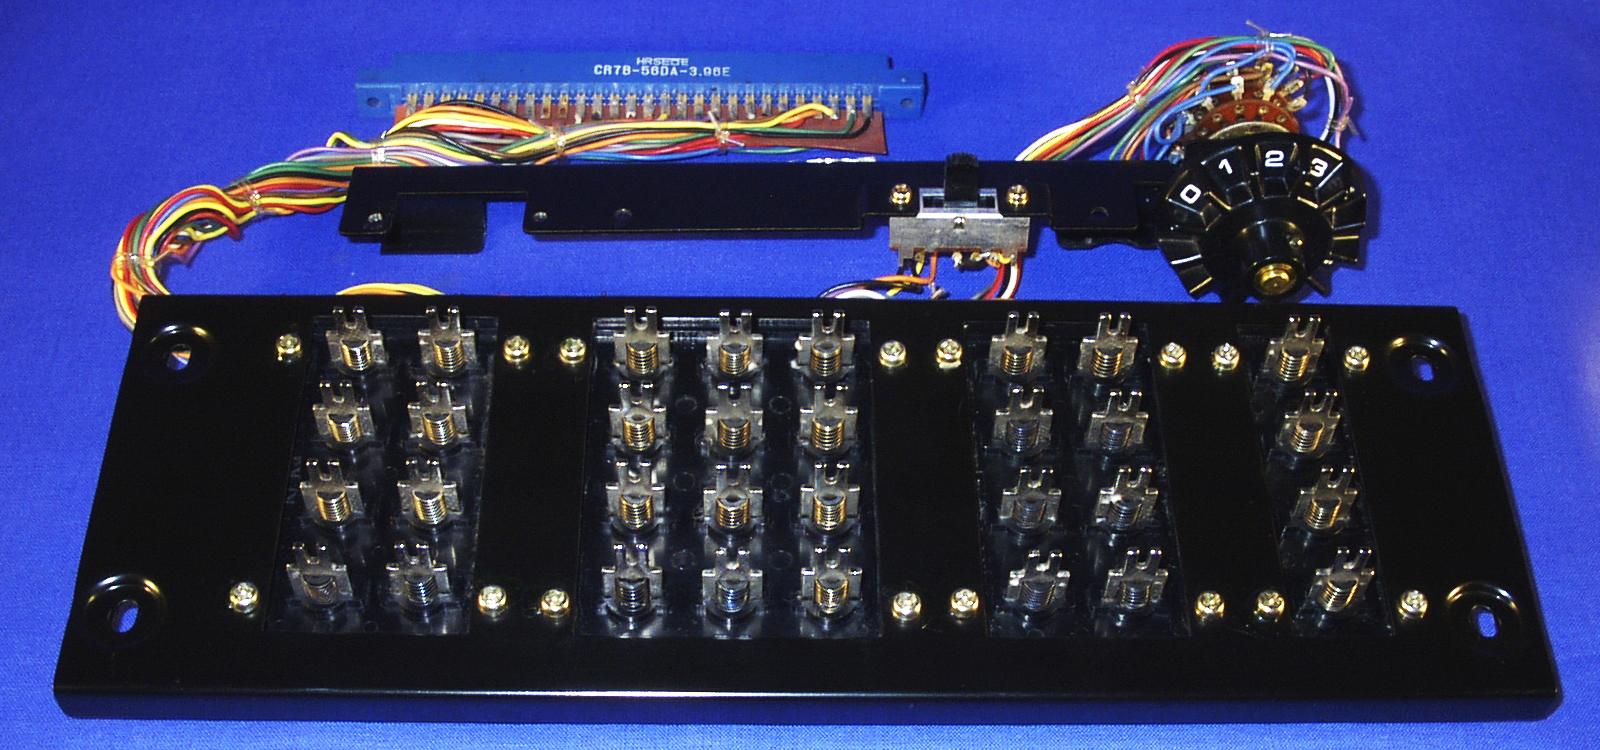 General Teknika 1600, Tastatur oben